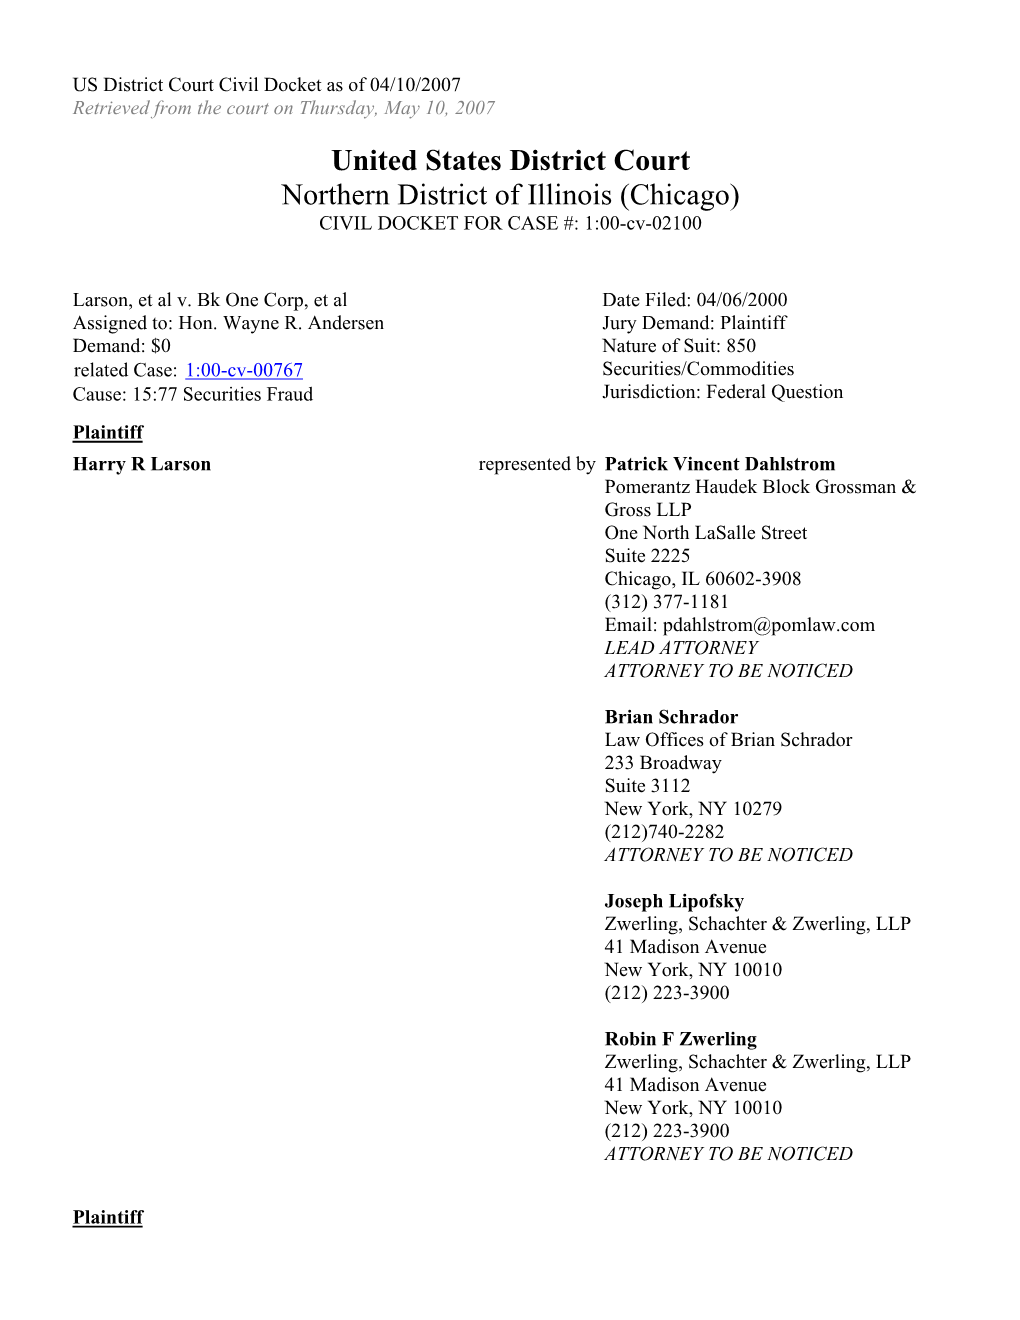 Larson, Et Al. V. Bank One Corporation, Et Al. 00-CV-2100-U.S. District